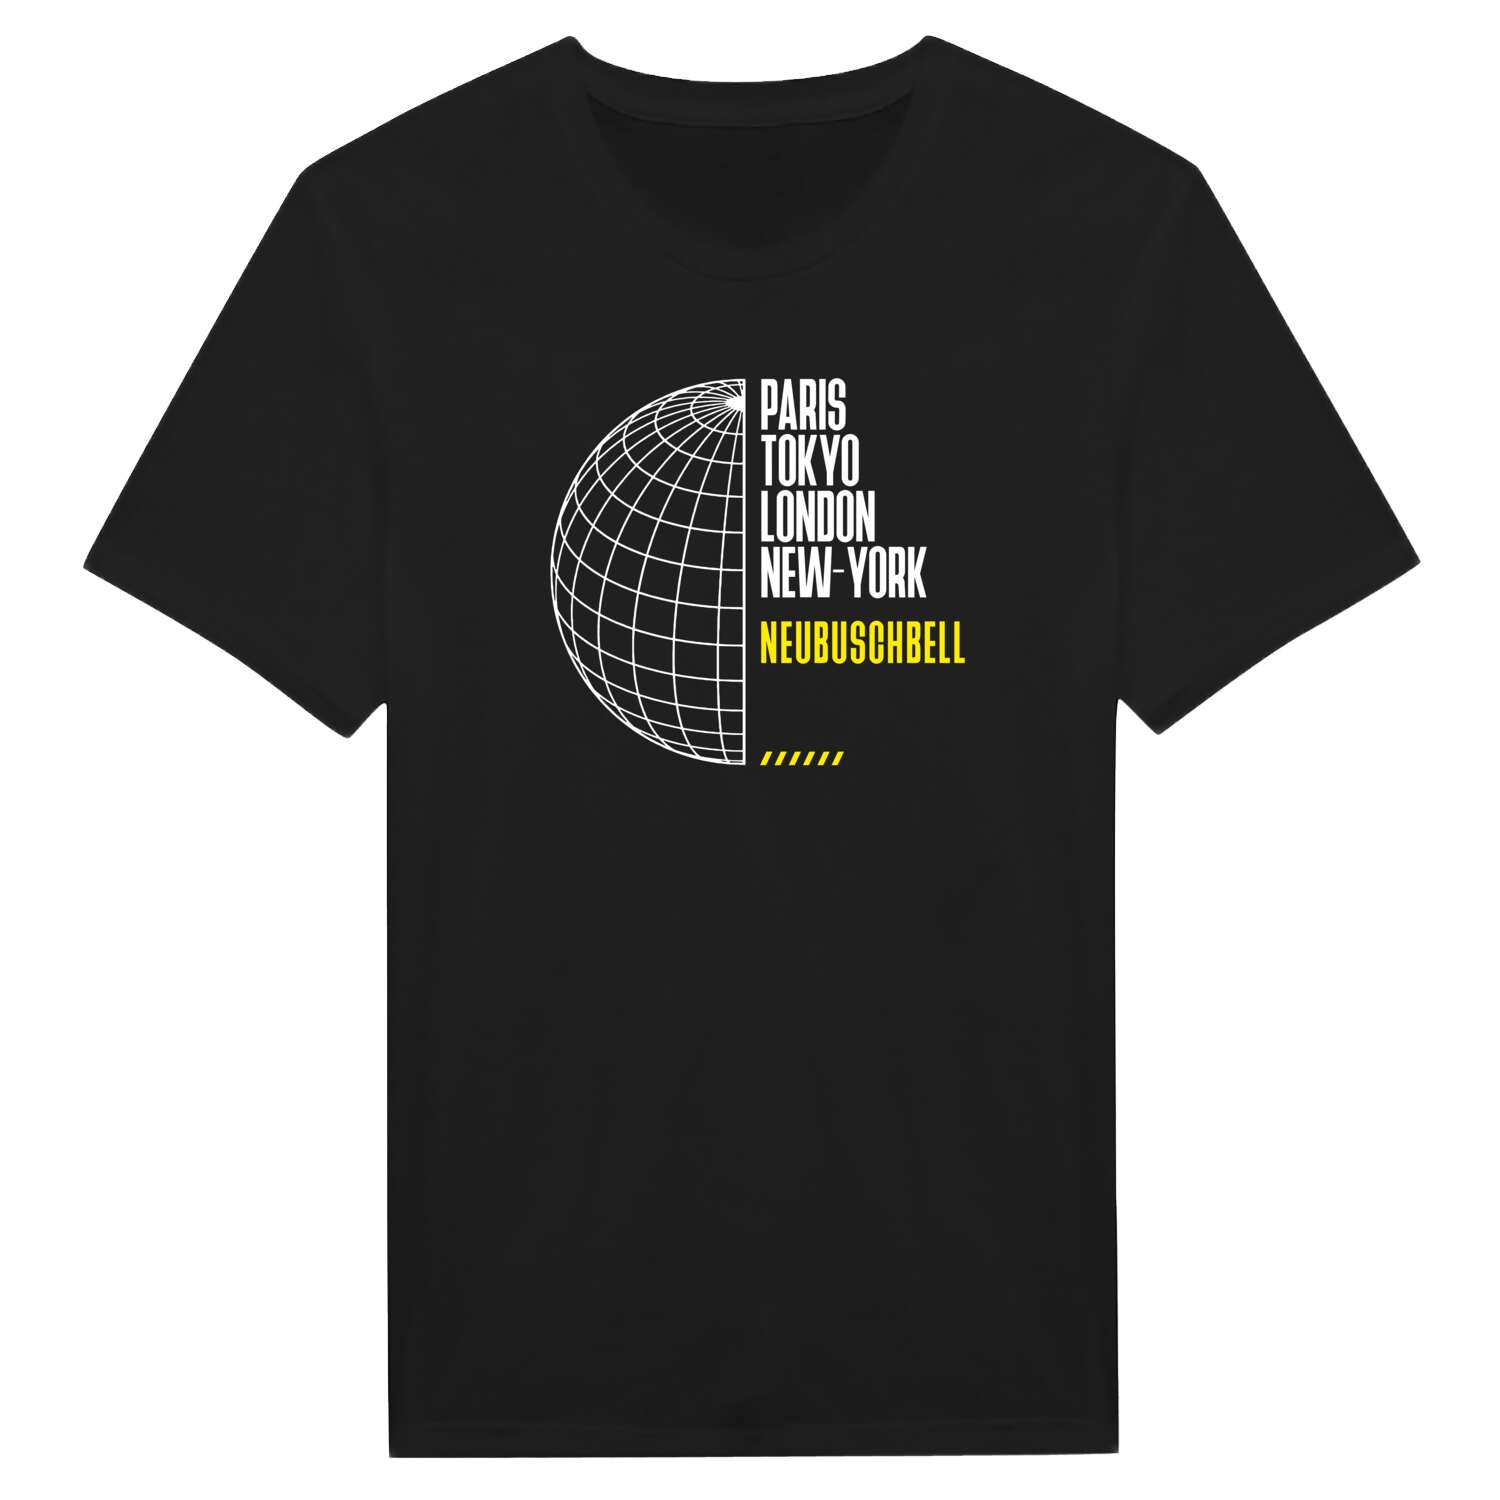 Neubuschbell T-Shirt »Paris Tokyo London«